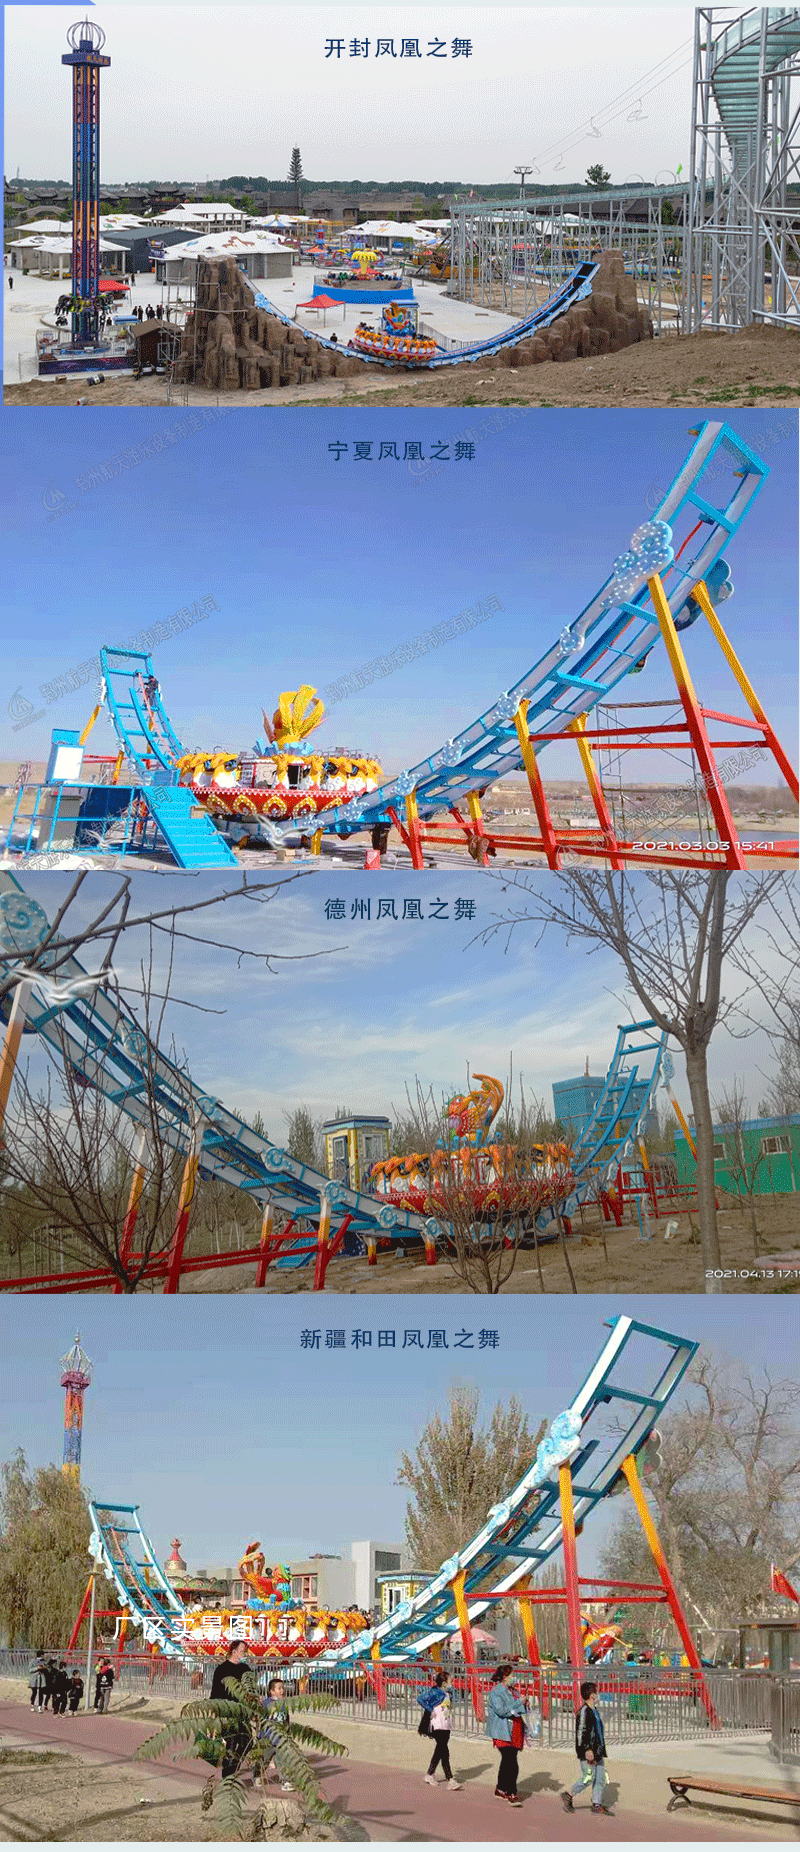 河南航天游乐生态园旋转骑士游乐场设施图片视频 4